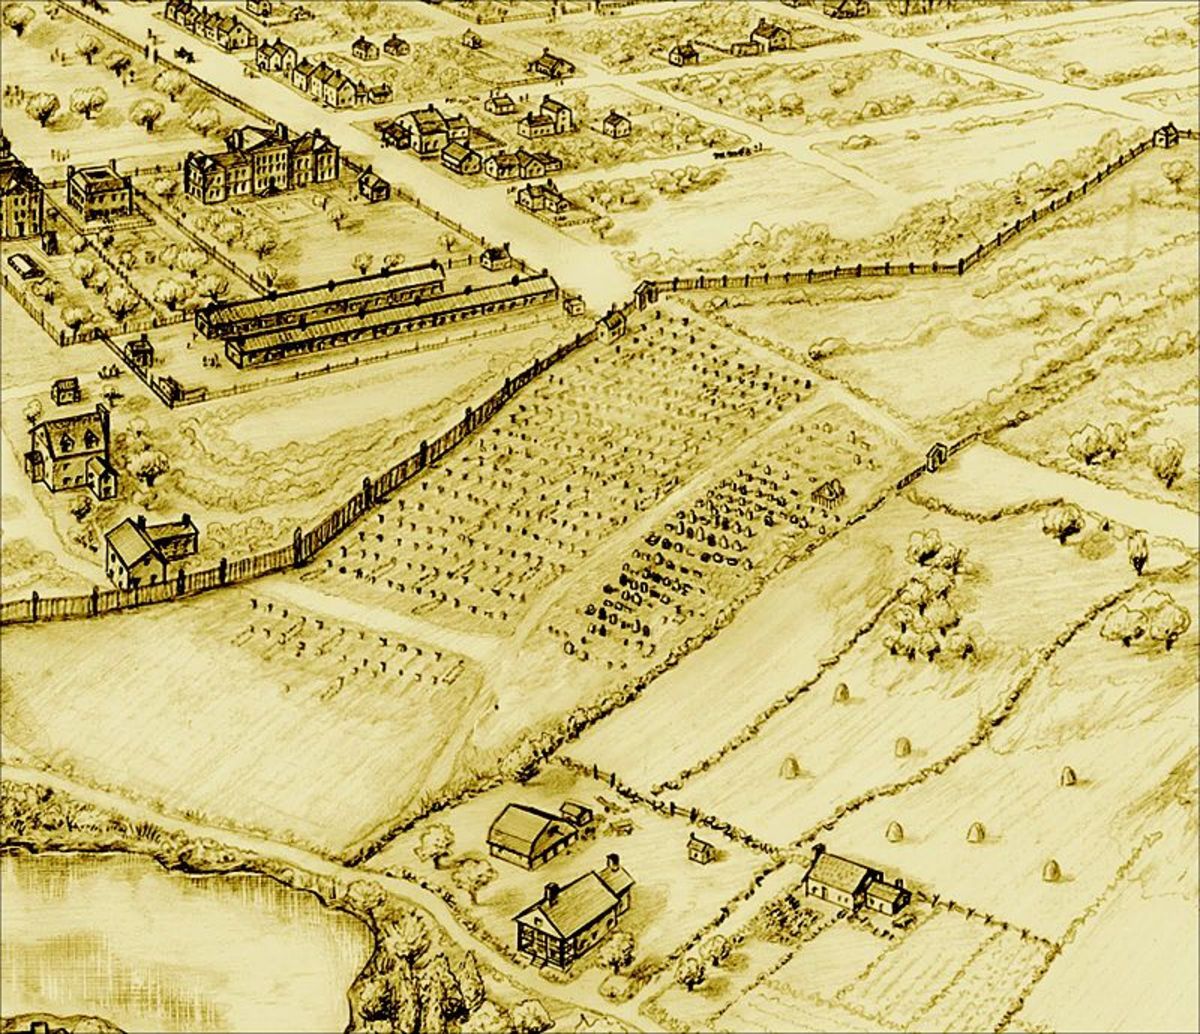 Negros Burial Grounds 1700